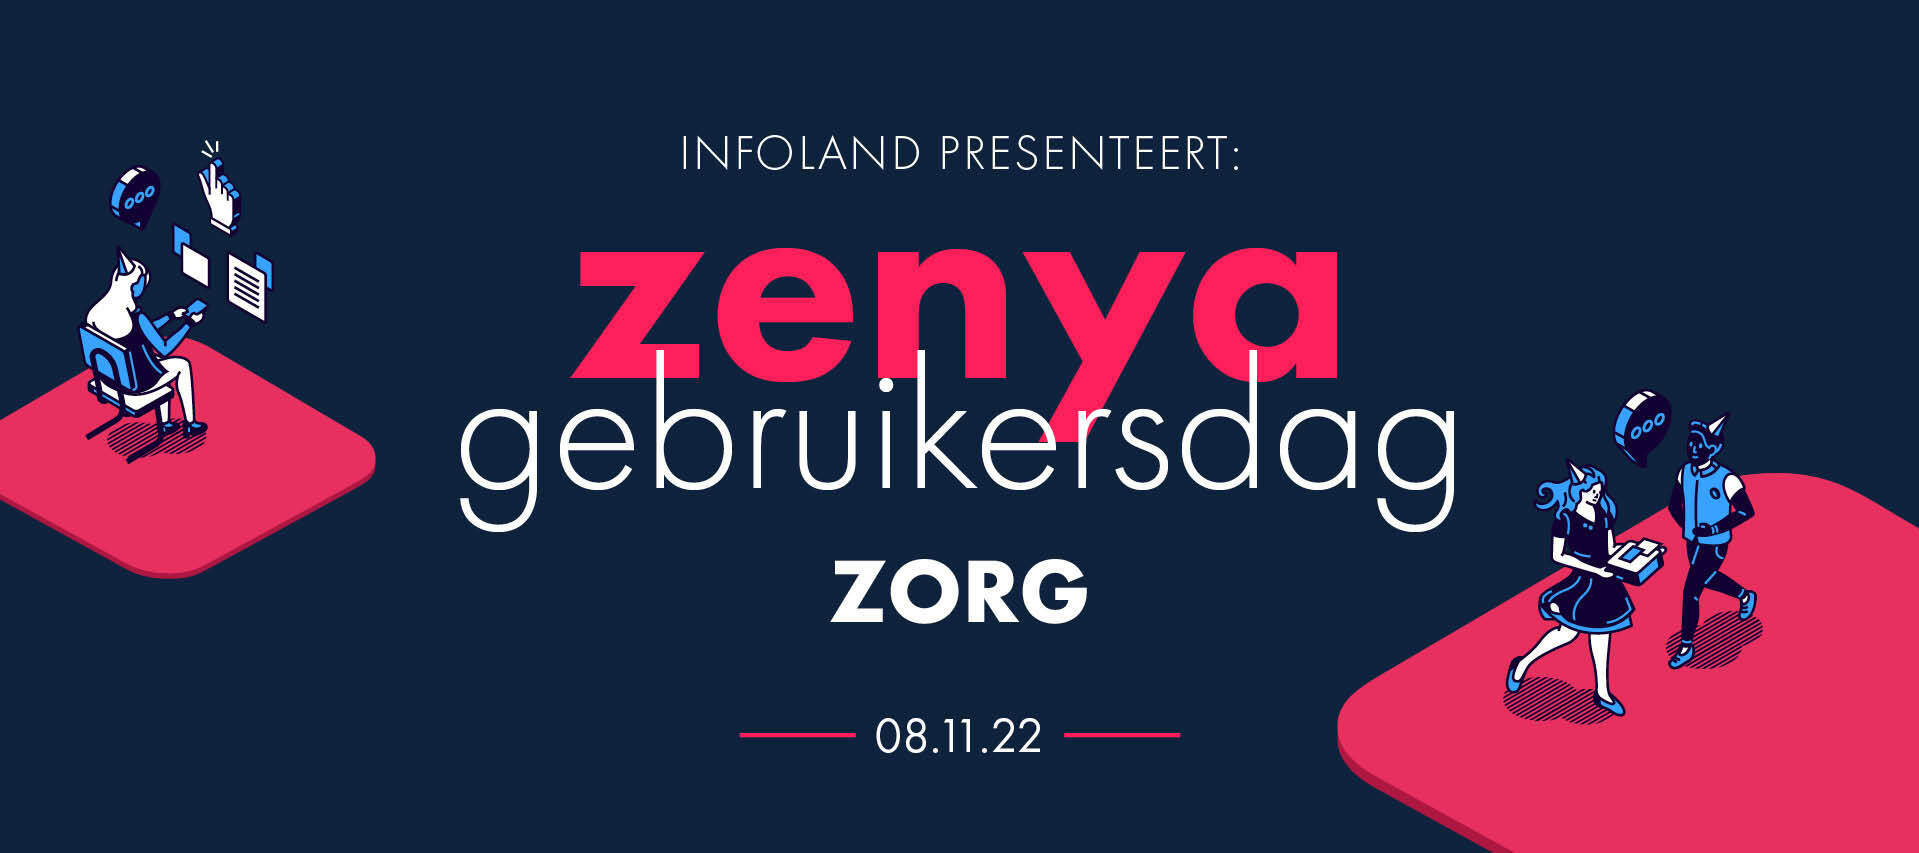 Infoland presenteert:  Zenya gebruikersdag 2022